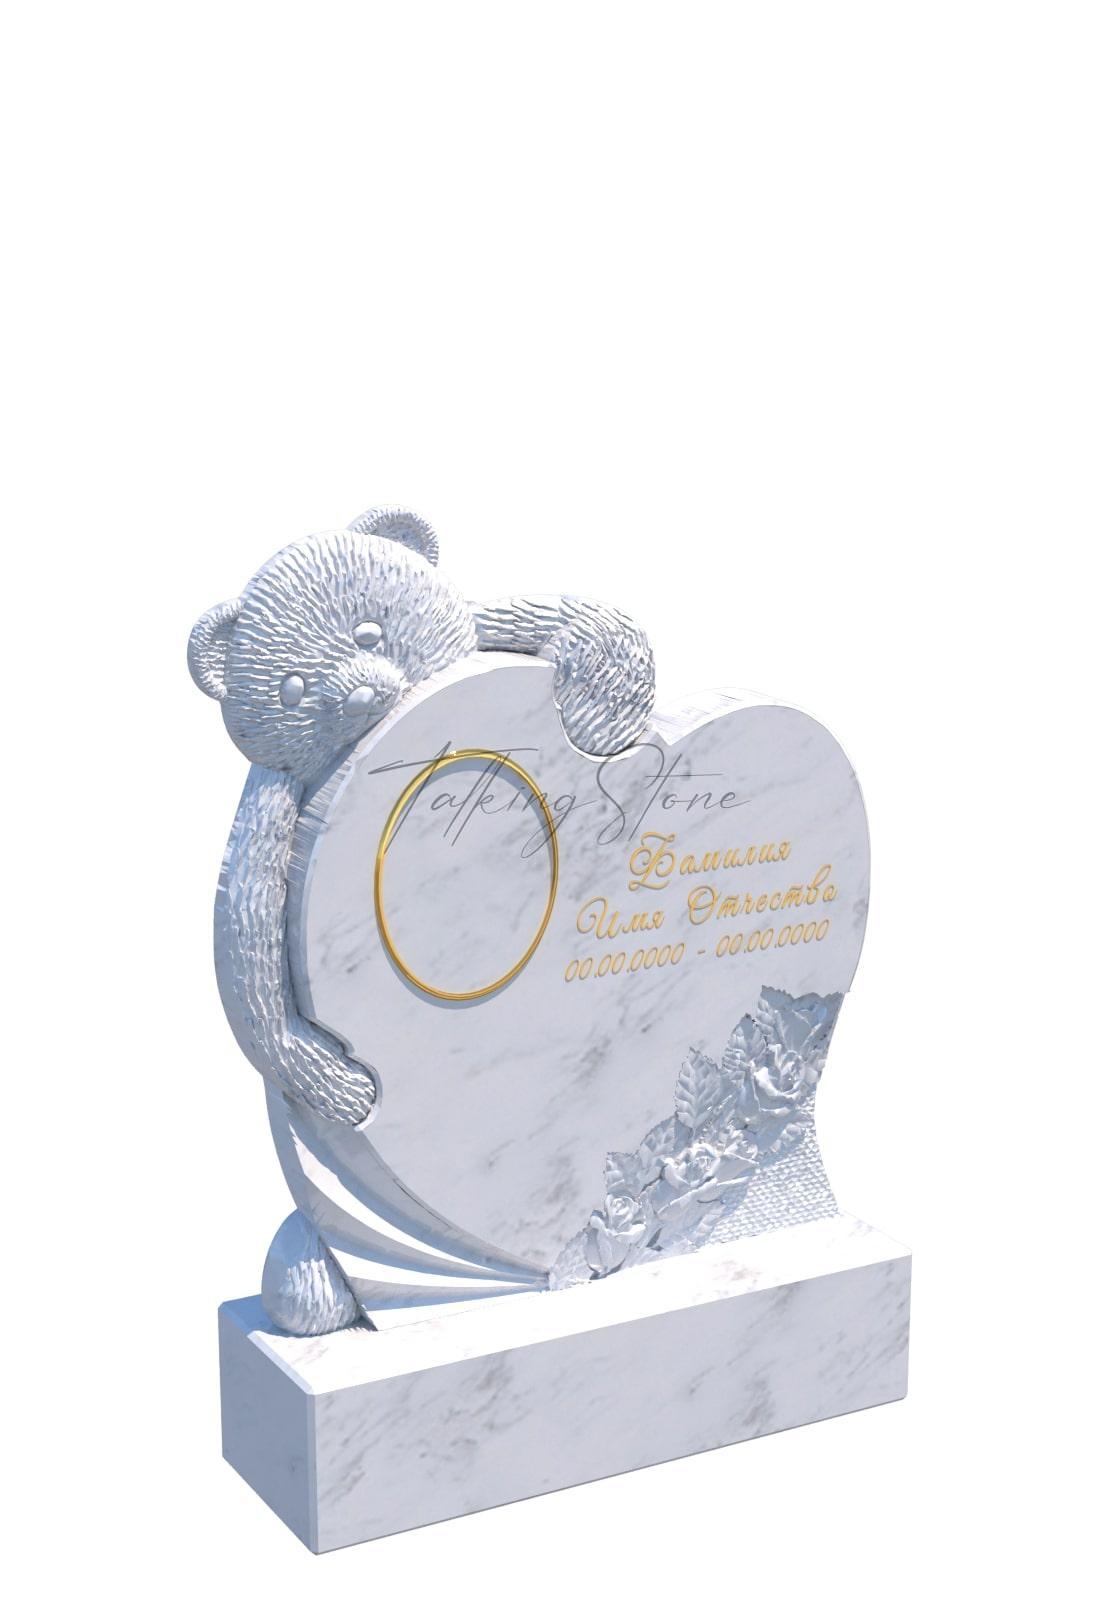 Памятник в виде сердца с выглядывающим сзади мишкой